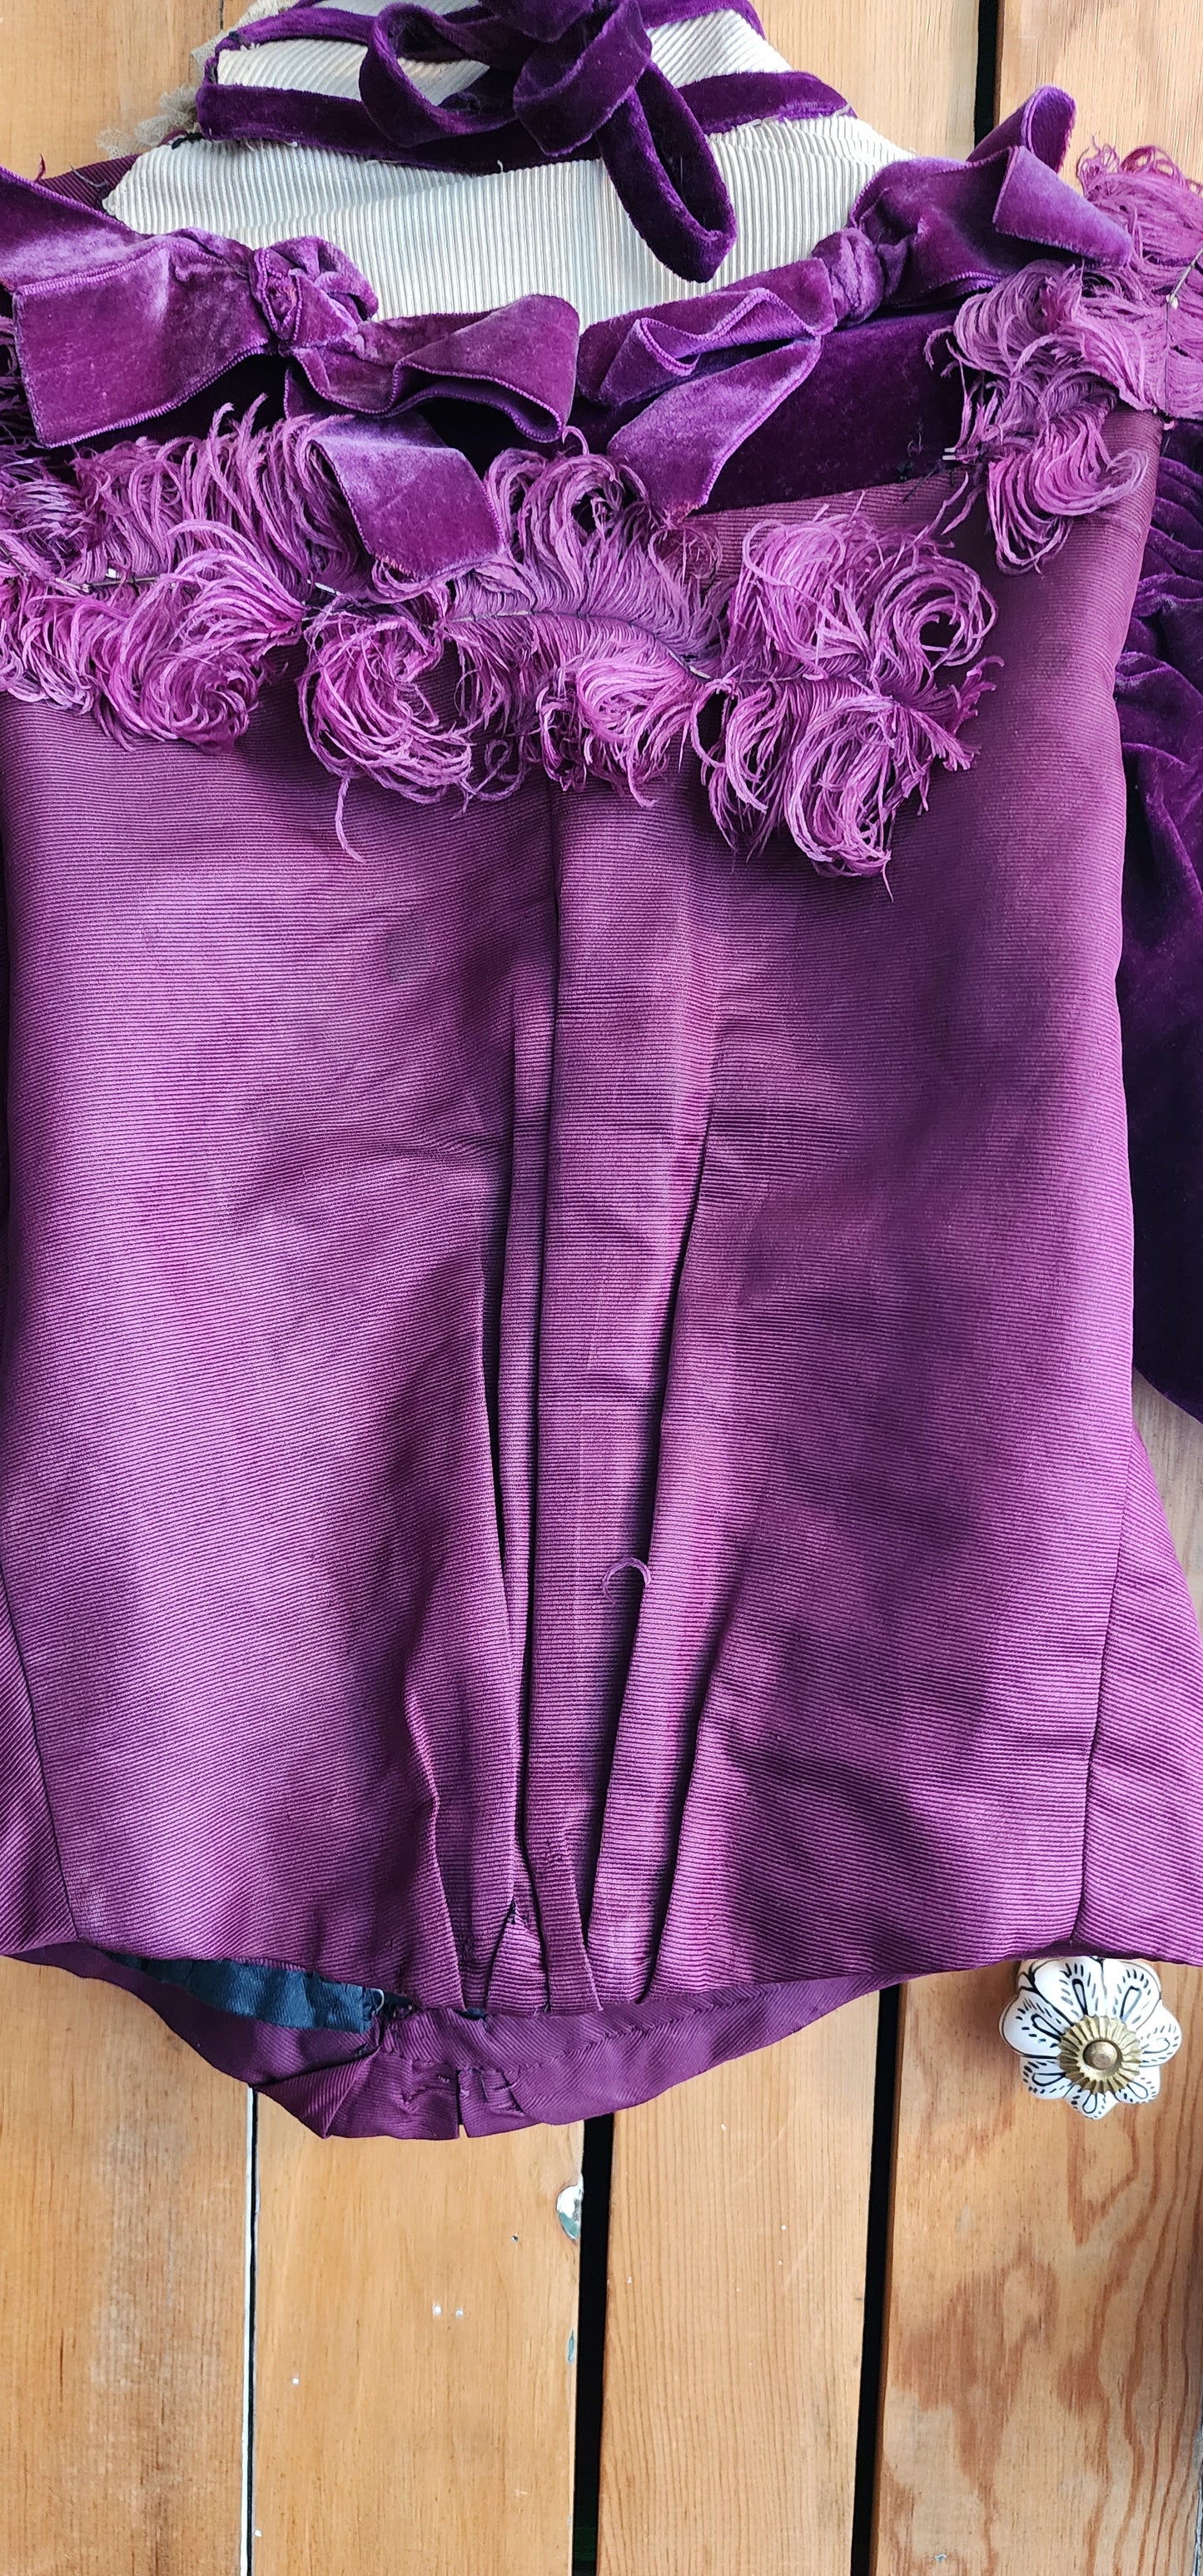 Edwardian Jacket Purple Velvet Cream Lace & Feathers